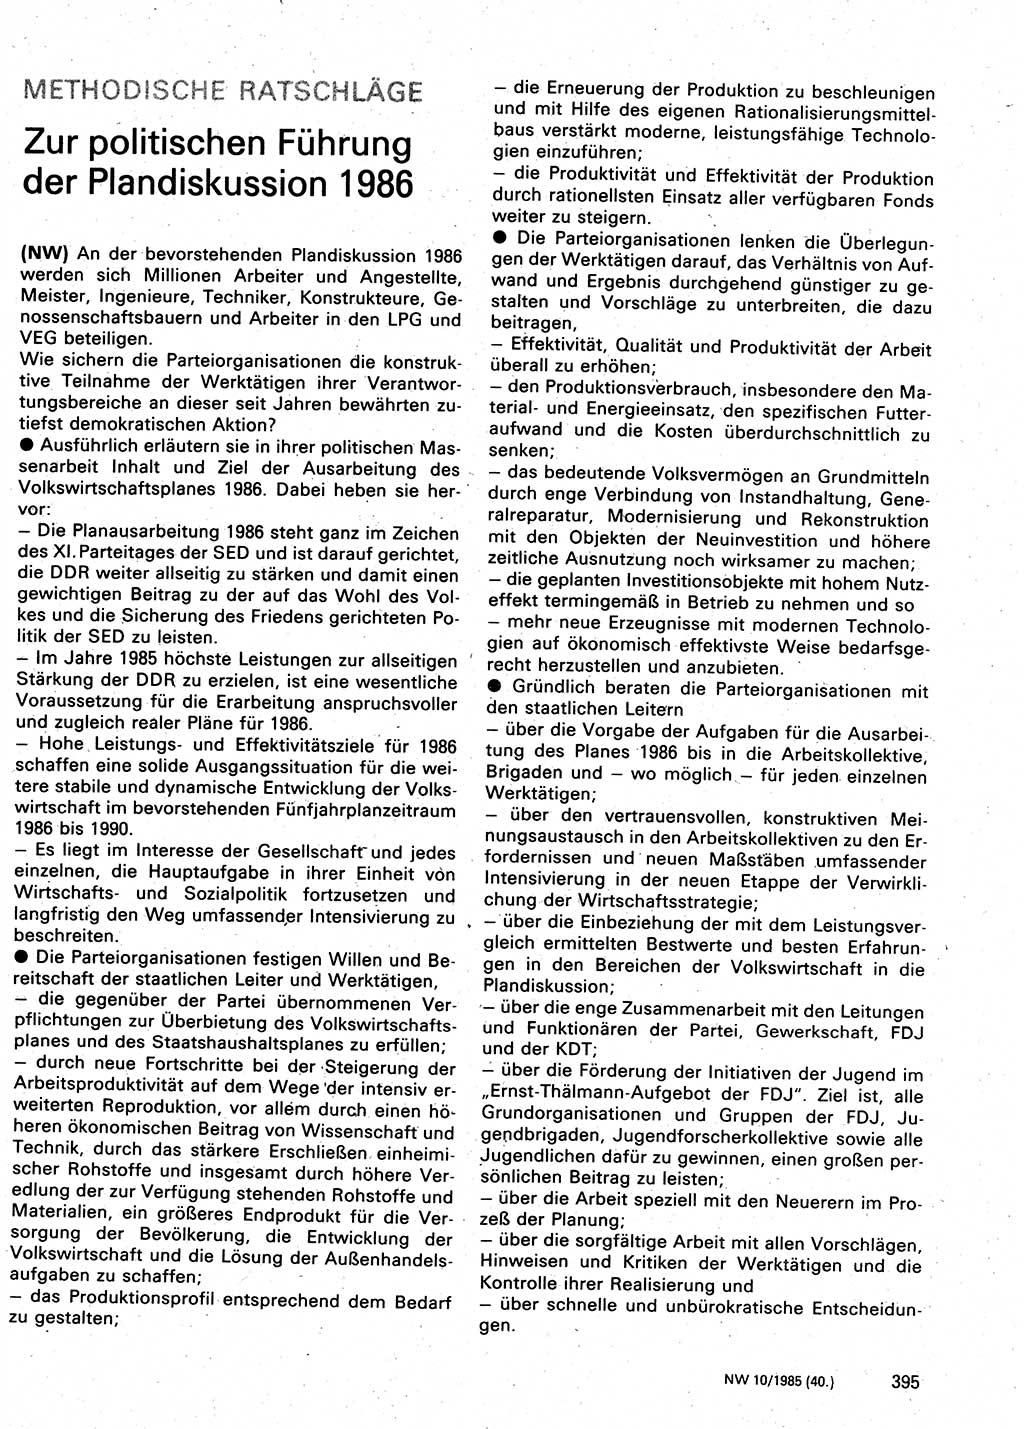 Neuer Weg (NW), Organ des Zentralkomitees (ZK) der SED (Sozialistische Einheitspartei Deutschlands) für Fragen des Parteilebens, 40. Jahrgang [Deutsche Demokratische Republik (DDR)] 1985, Seite 395 (NW ZK SED DDR 1985, S. 395)